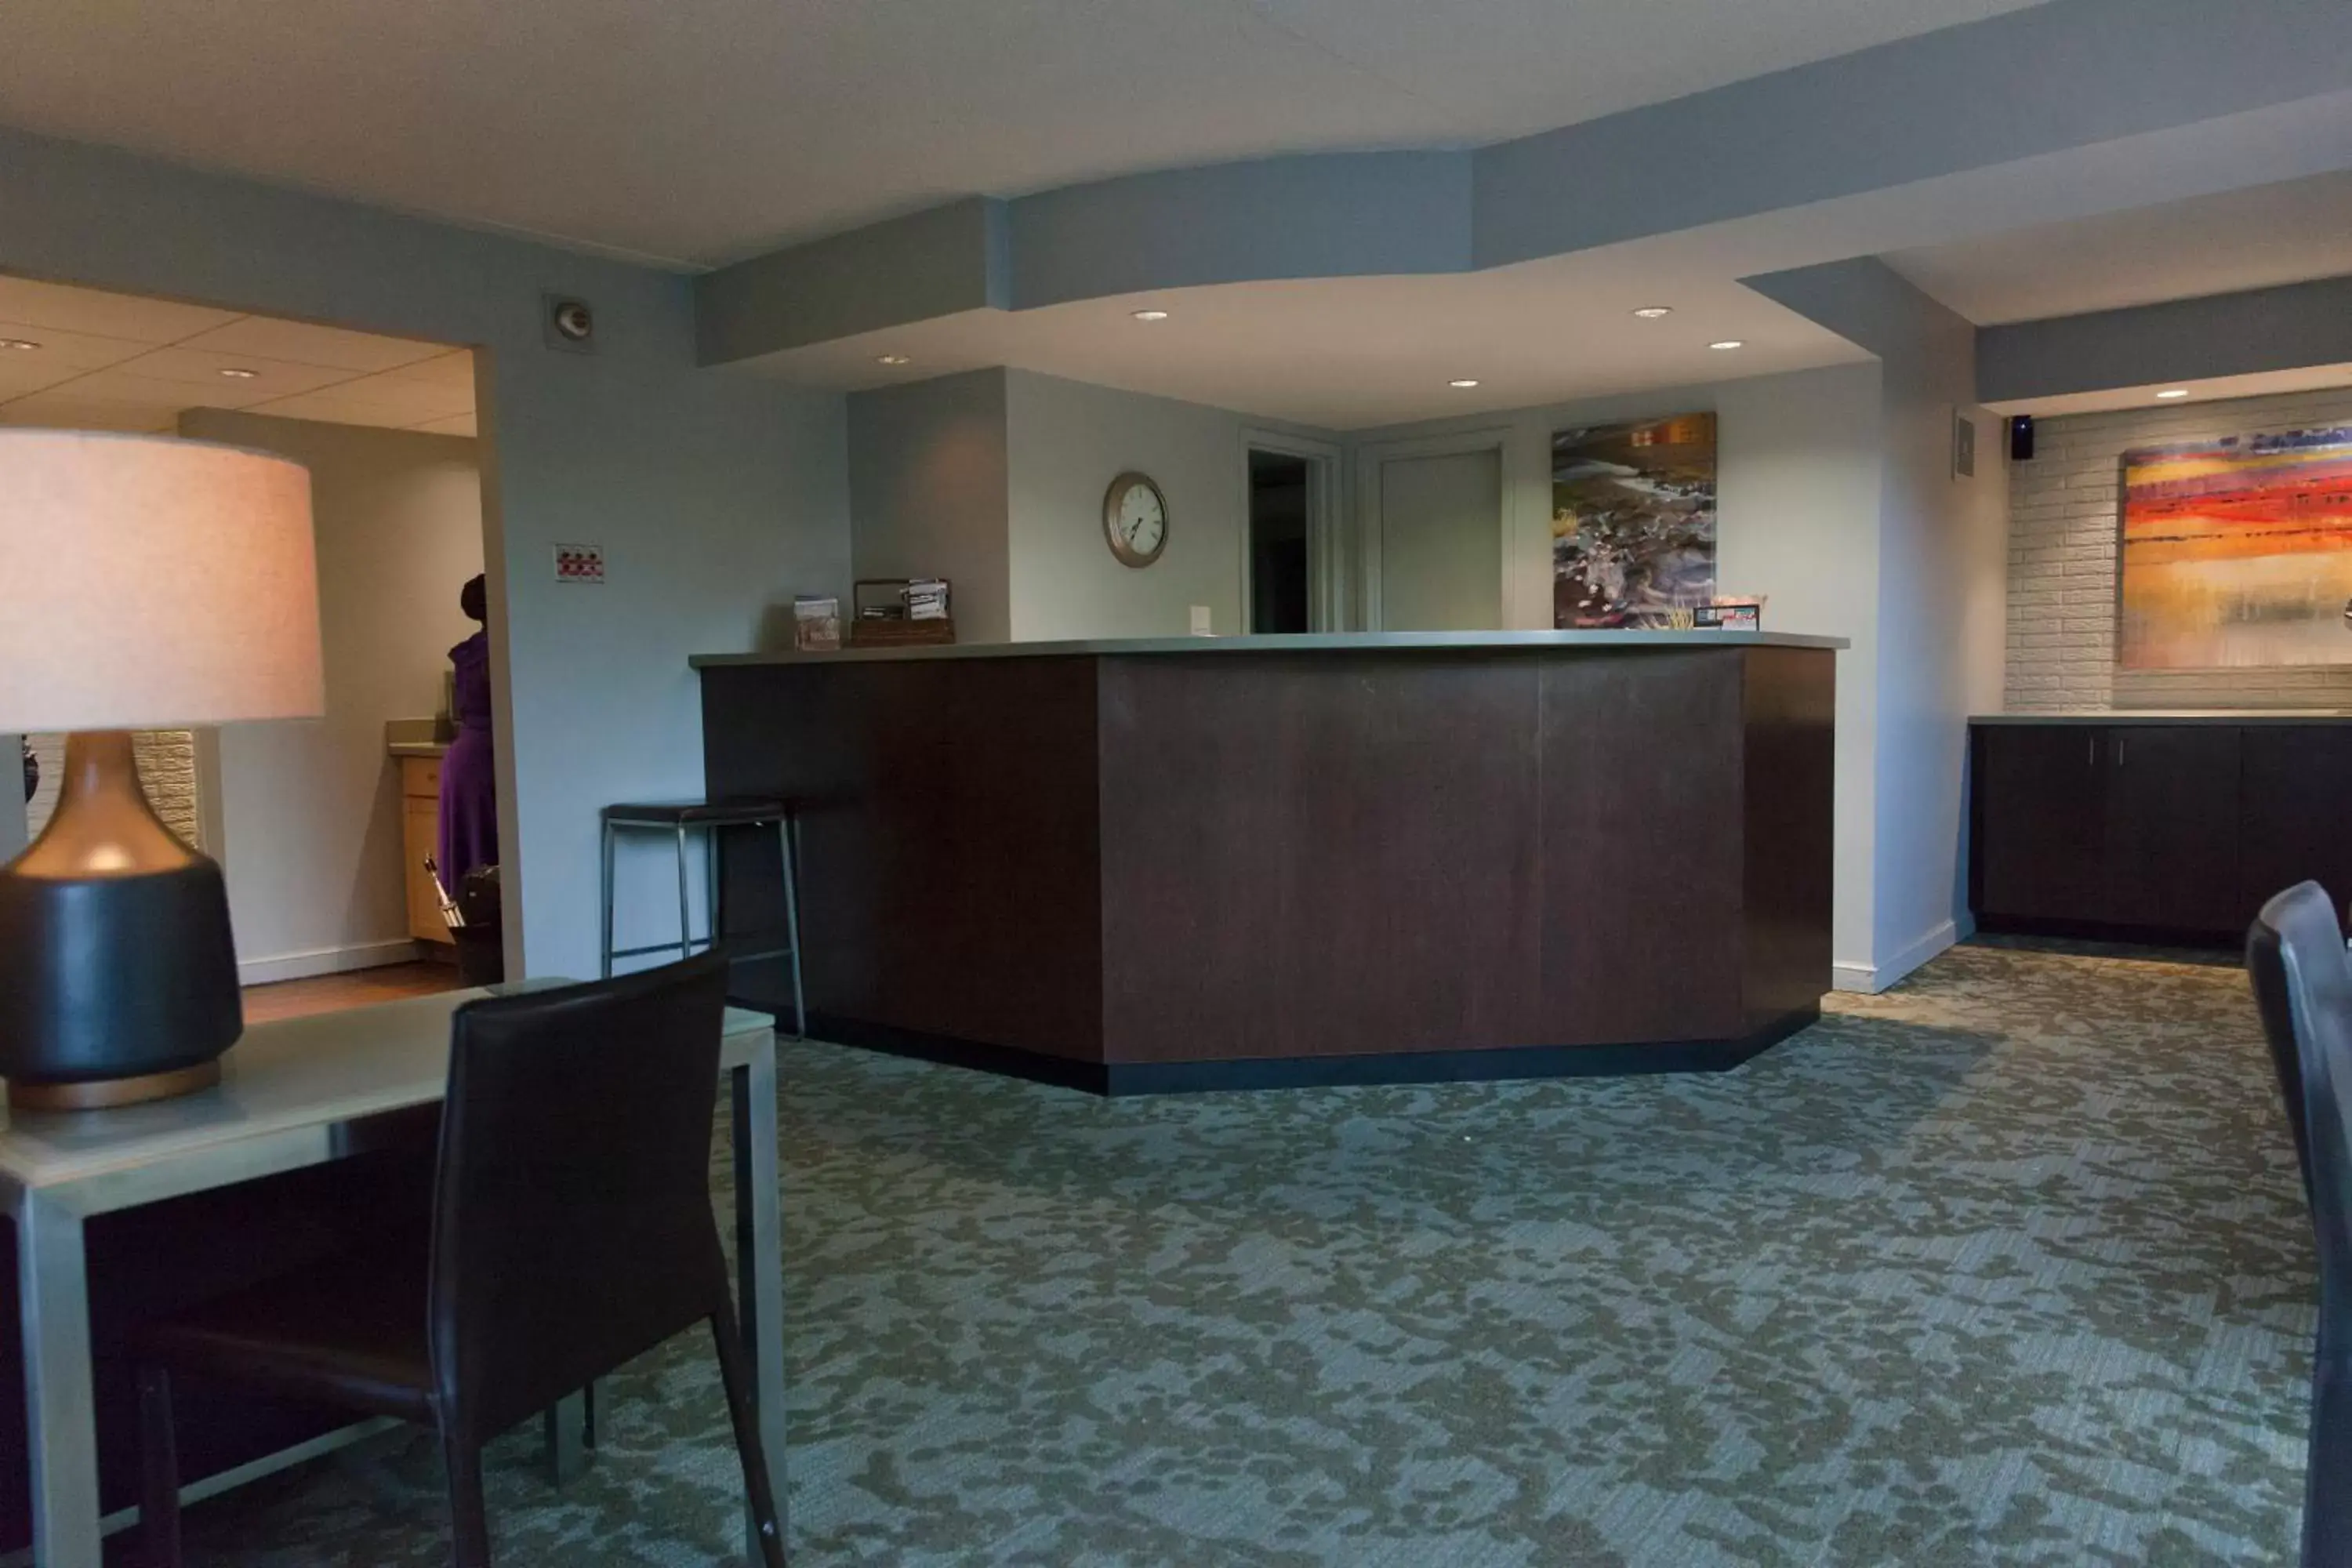 Lobby or reception in Inns of Virginia Arlington